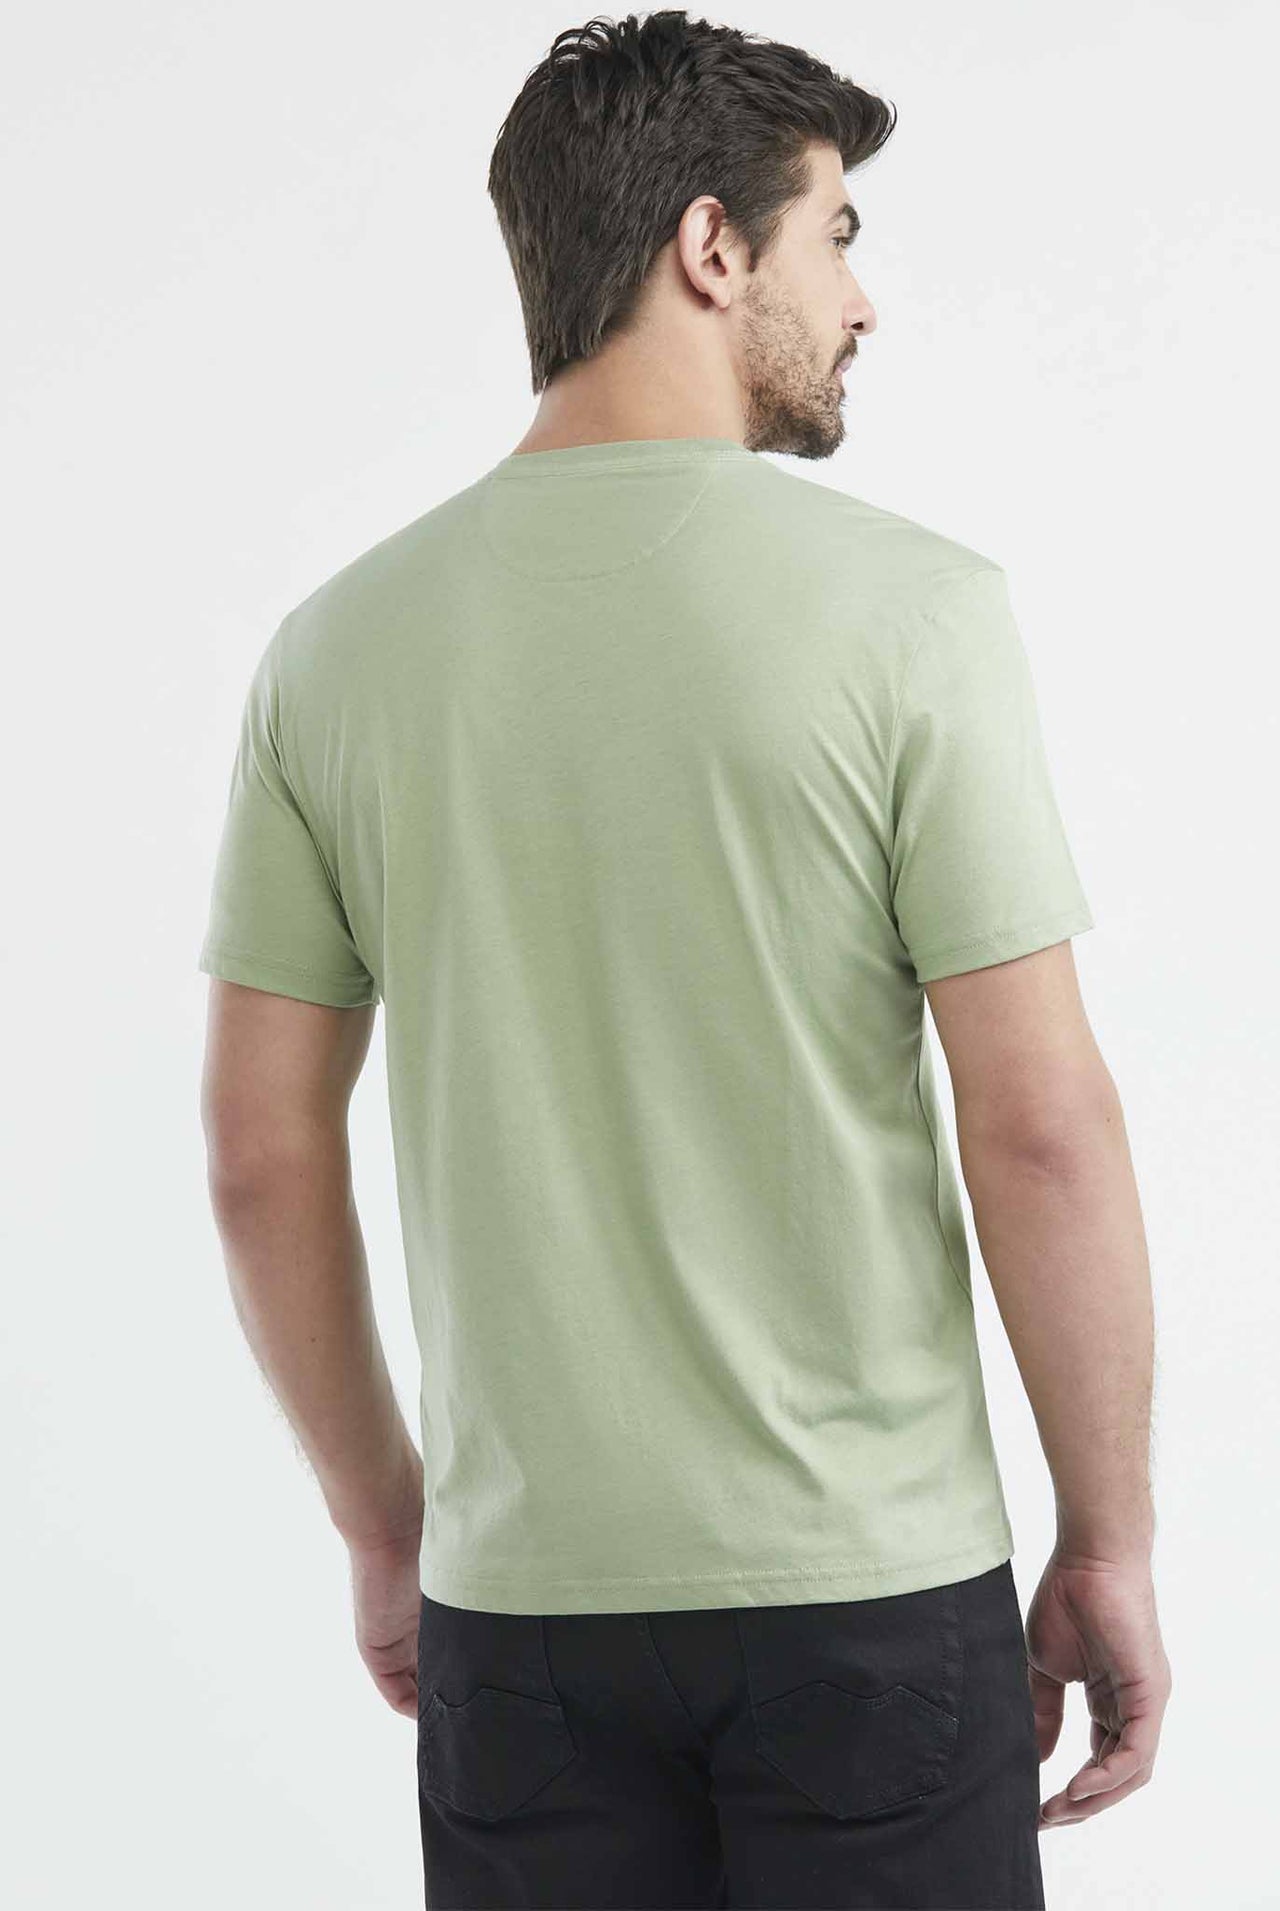 Camiseta Chevignon Manga Corta Cuello Redondo Color Verde - 649E020-301